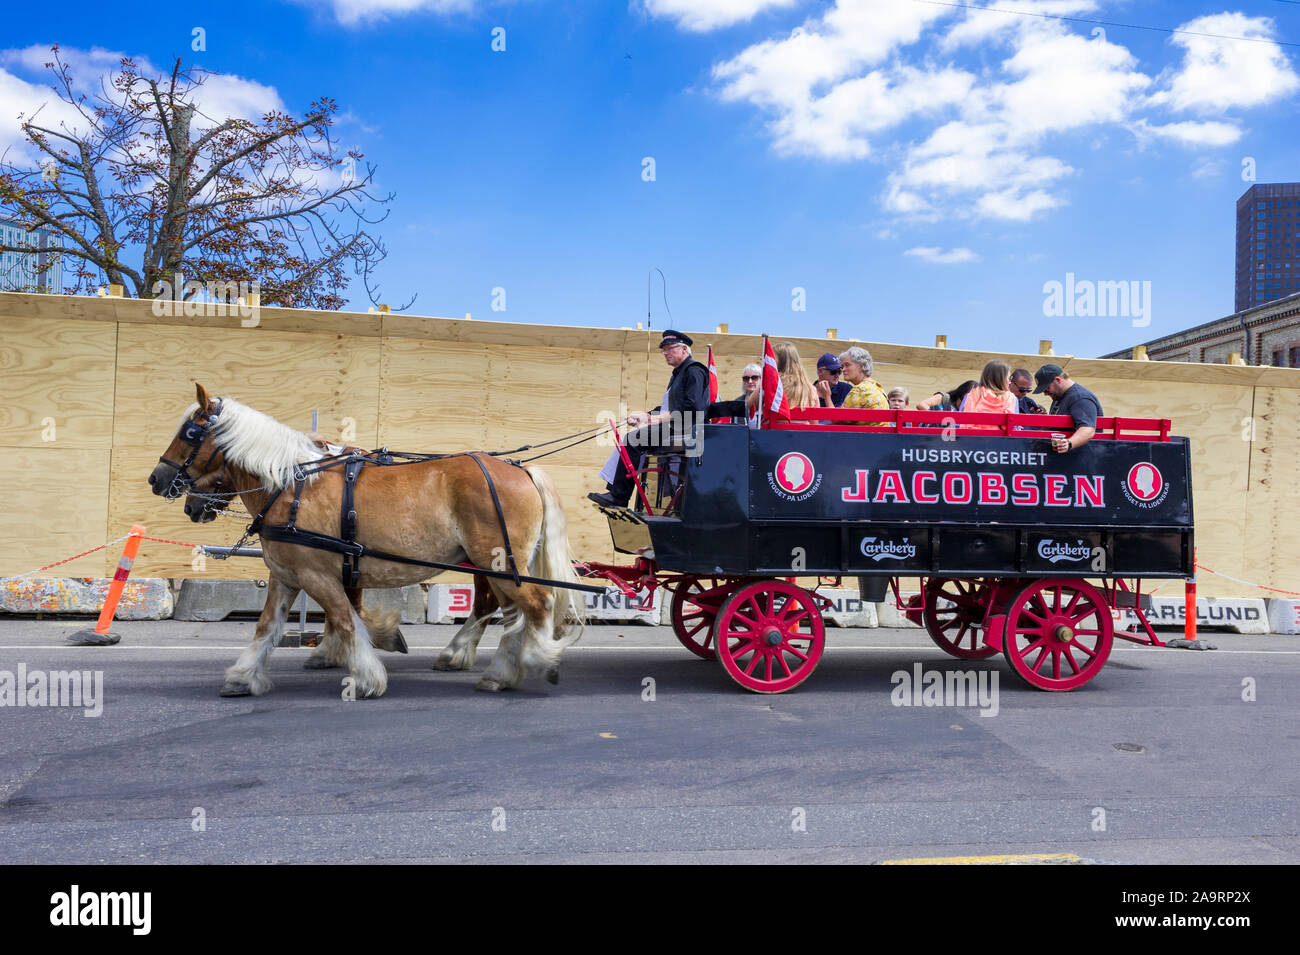 Besucher in eine von Pferden gezogene Wagen verlassen Brauerei Carlsberg, Kopenhagen, Dänemark Stockfoto